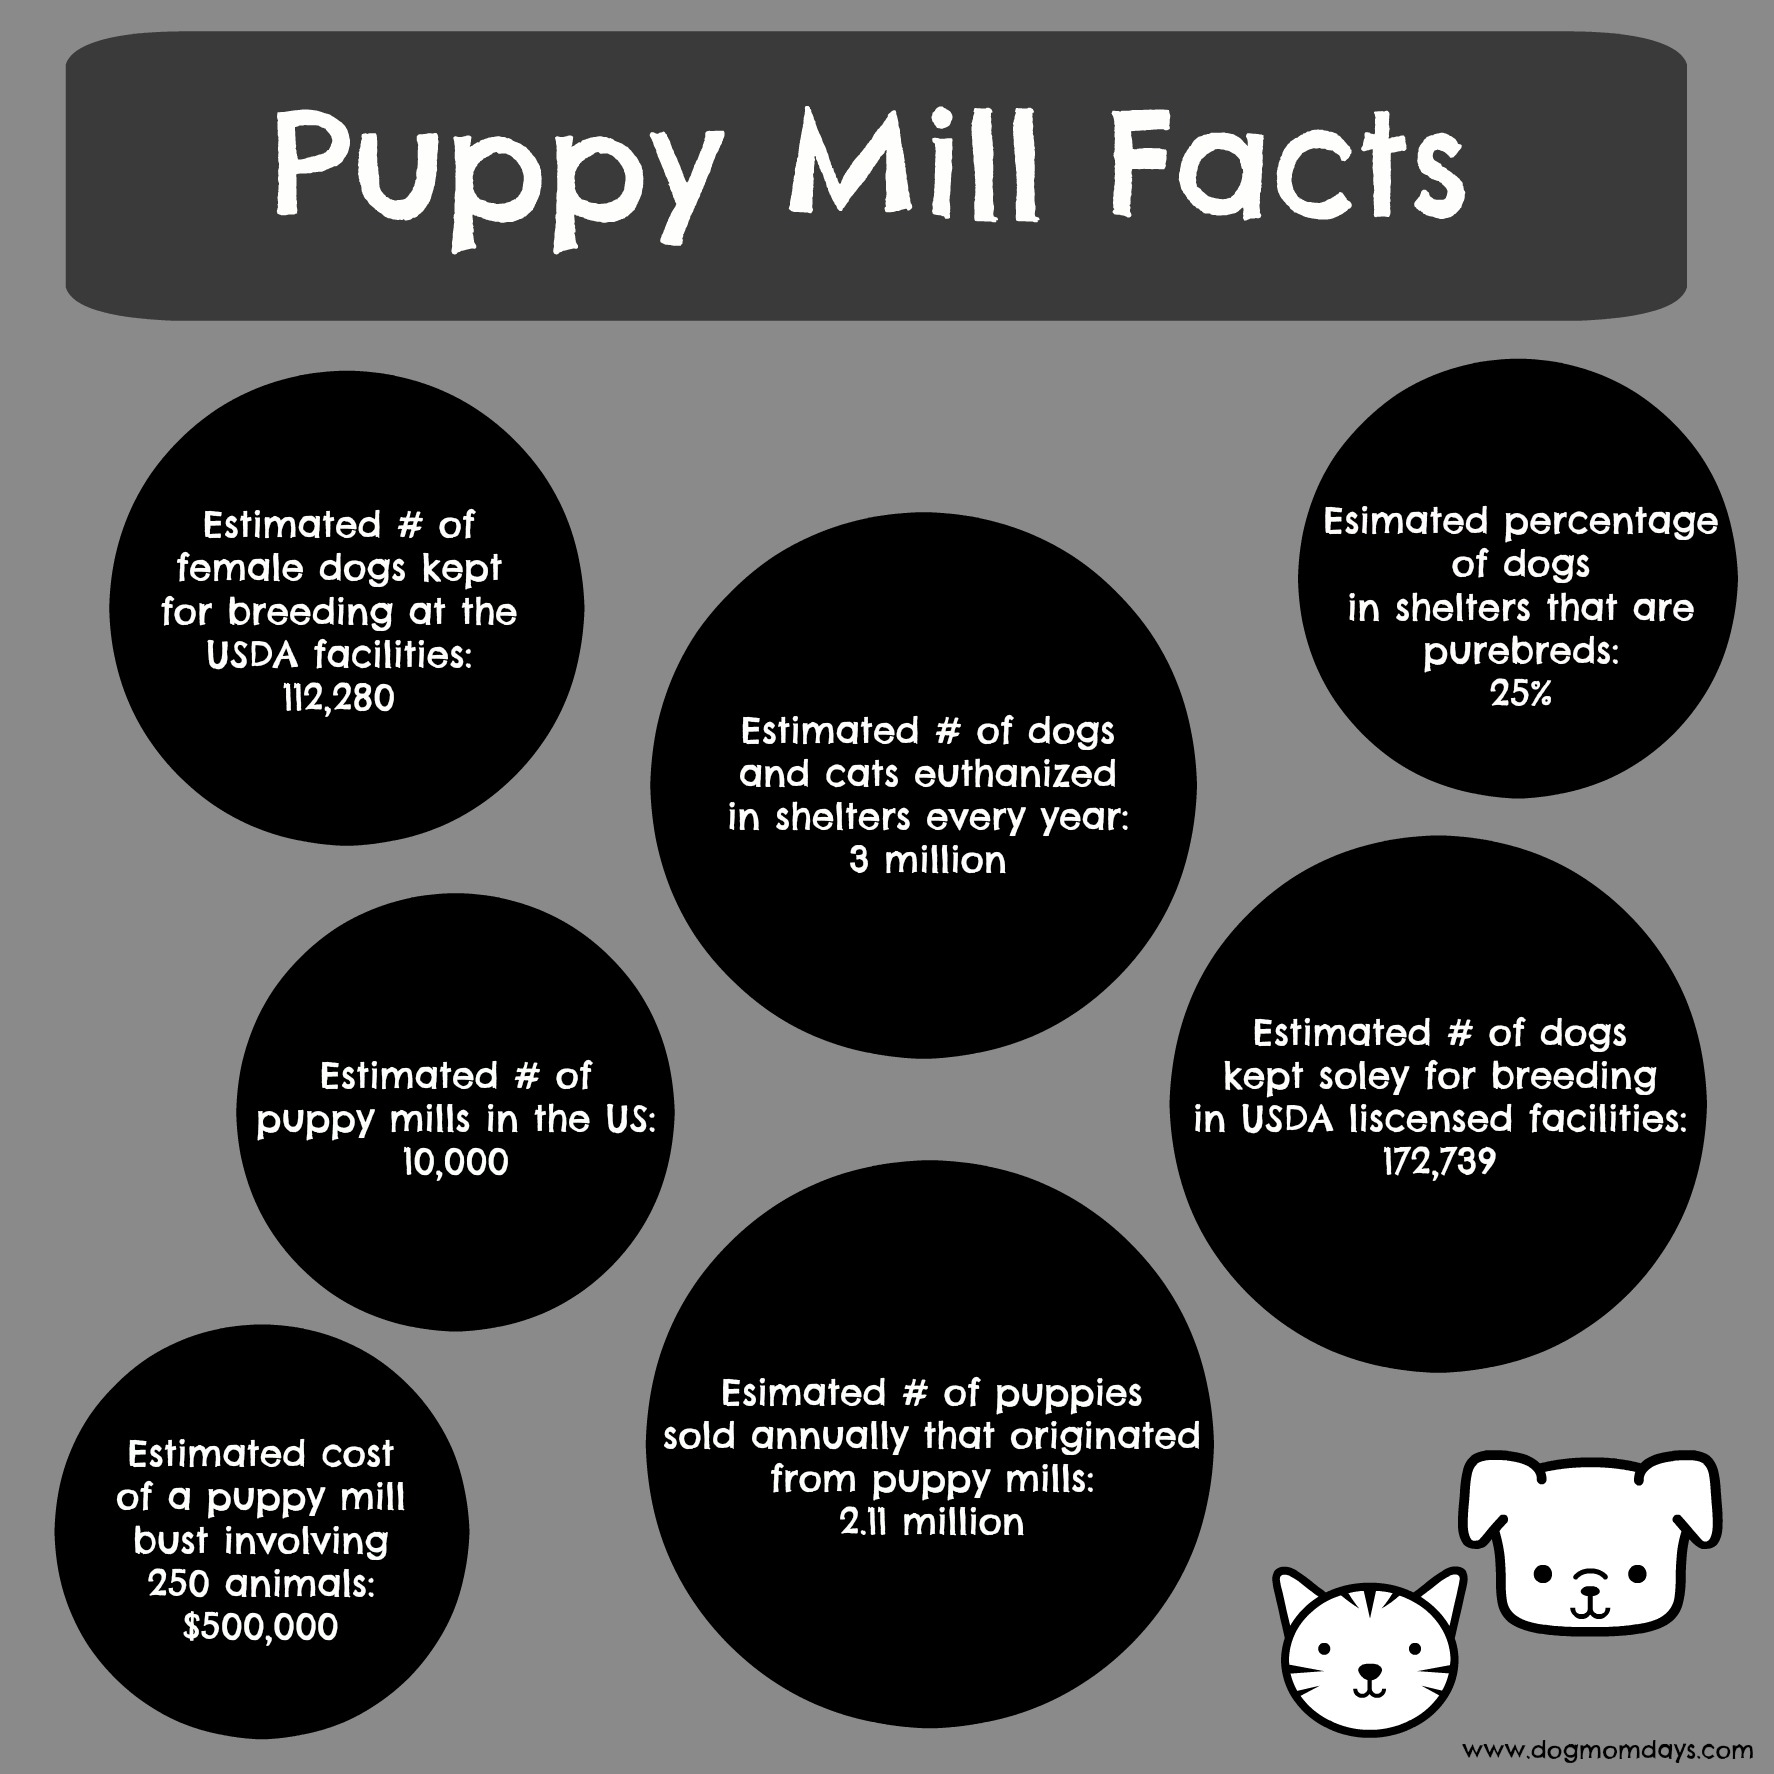 puppy mills